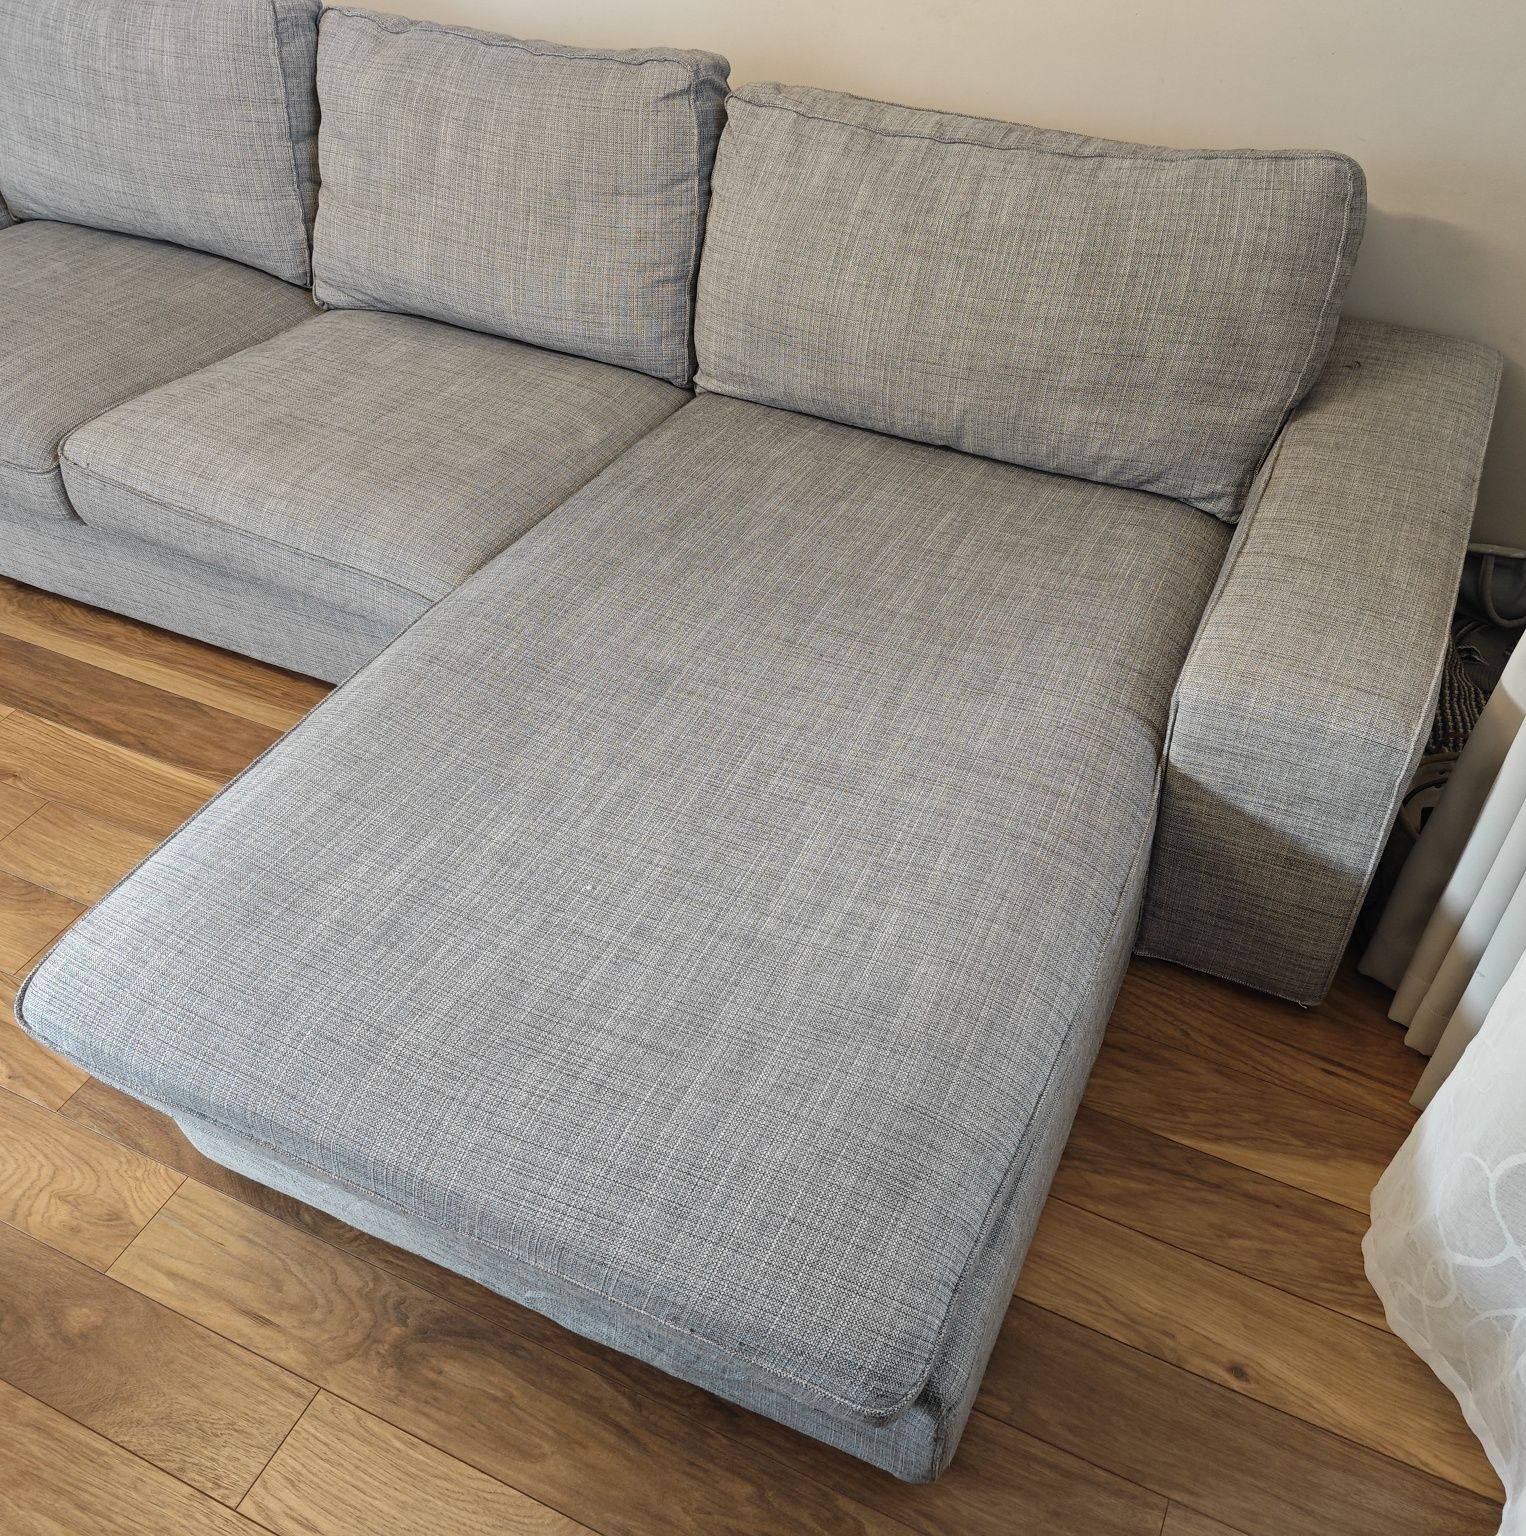 Sofa 2 osobowa z szezlongiem IKEA KIVIK, pokrycie Isunda szary - 1 wł.